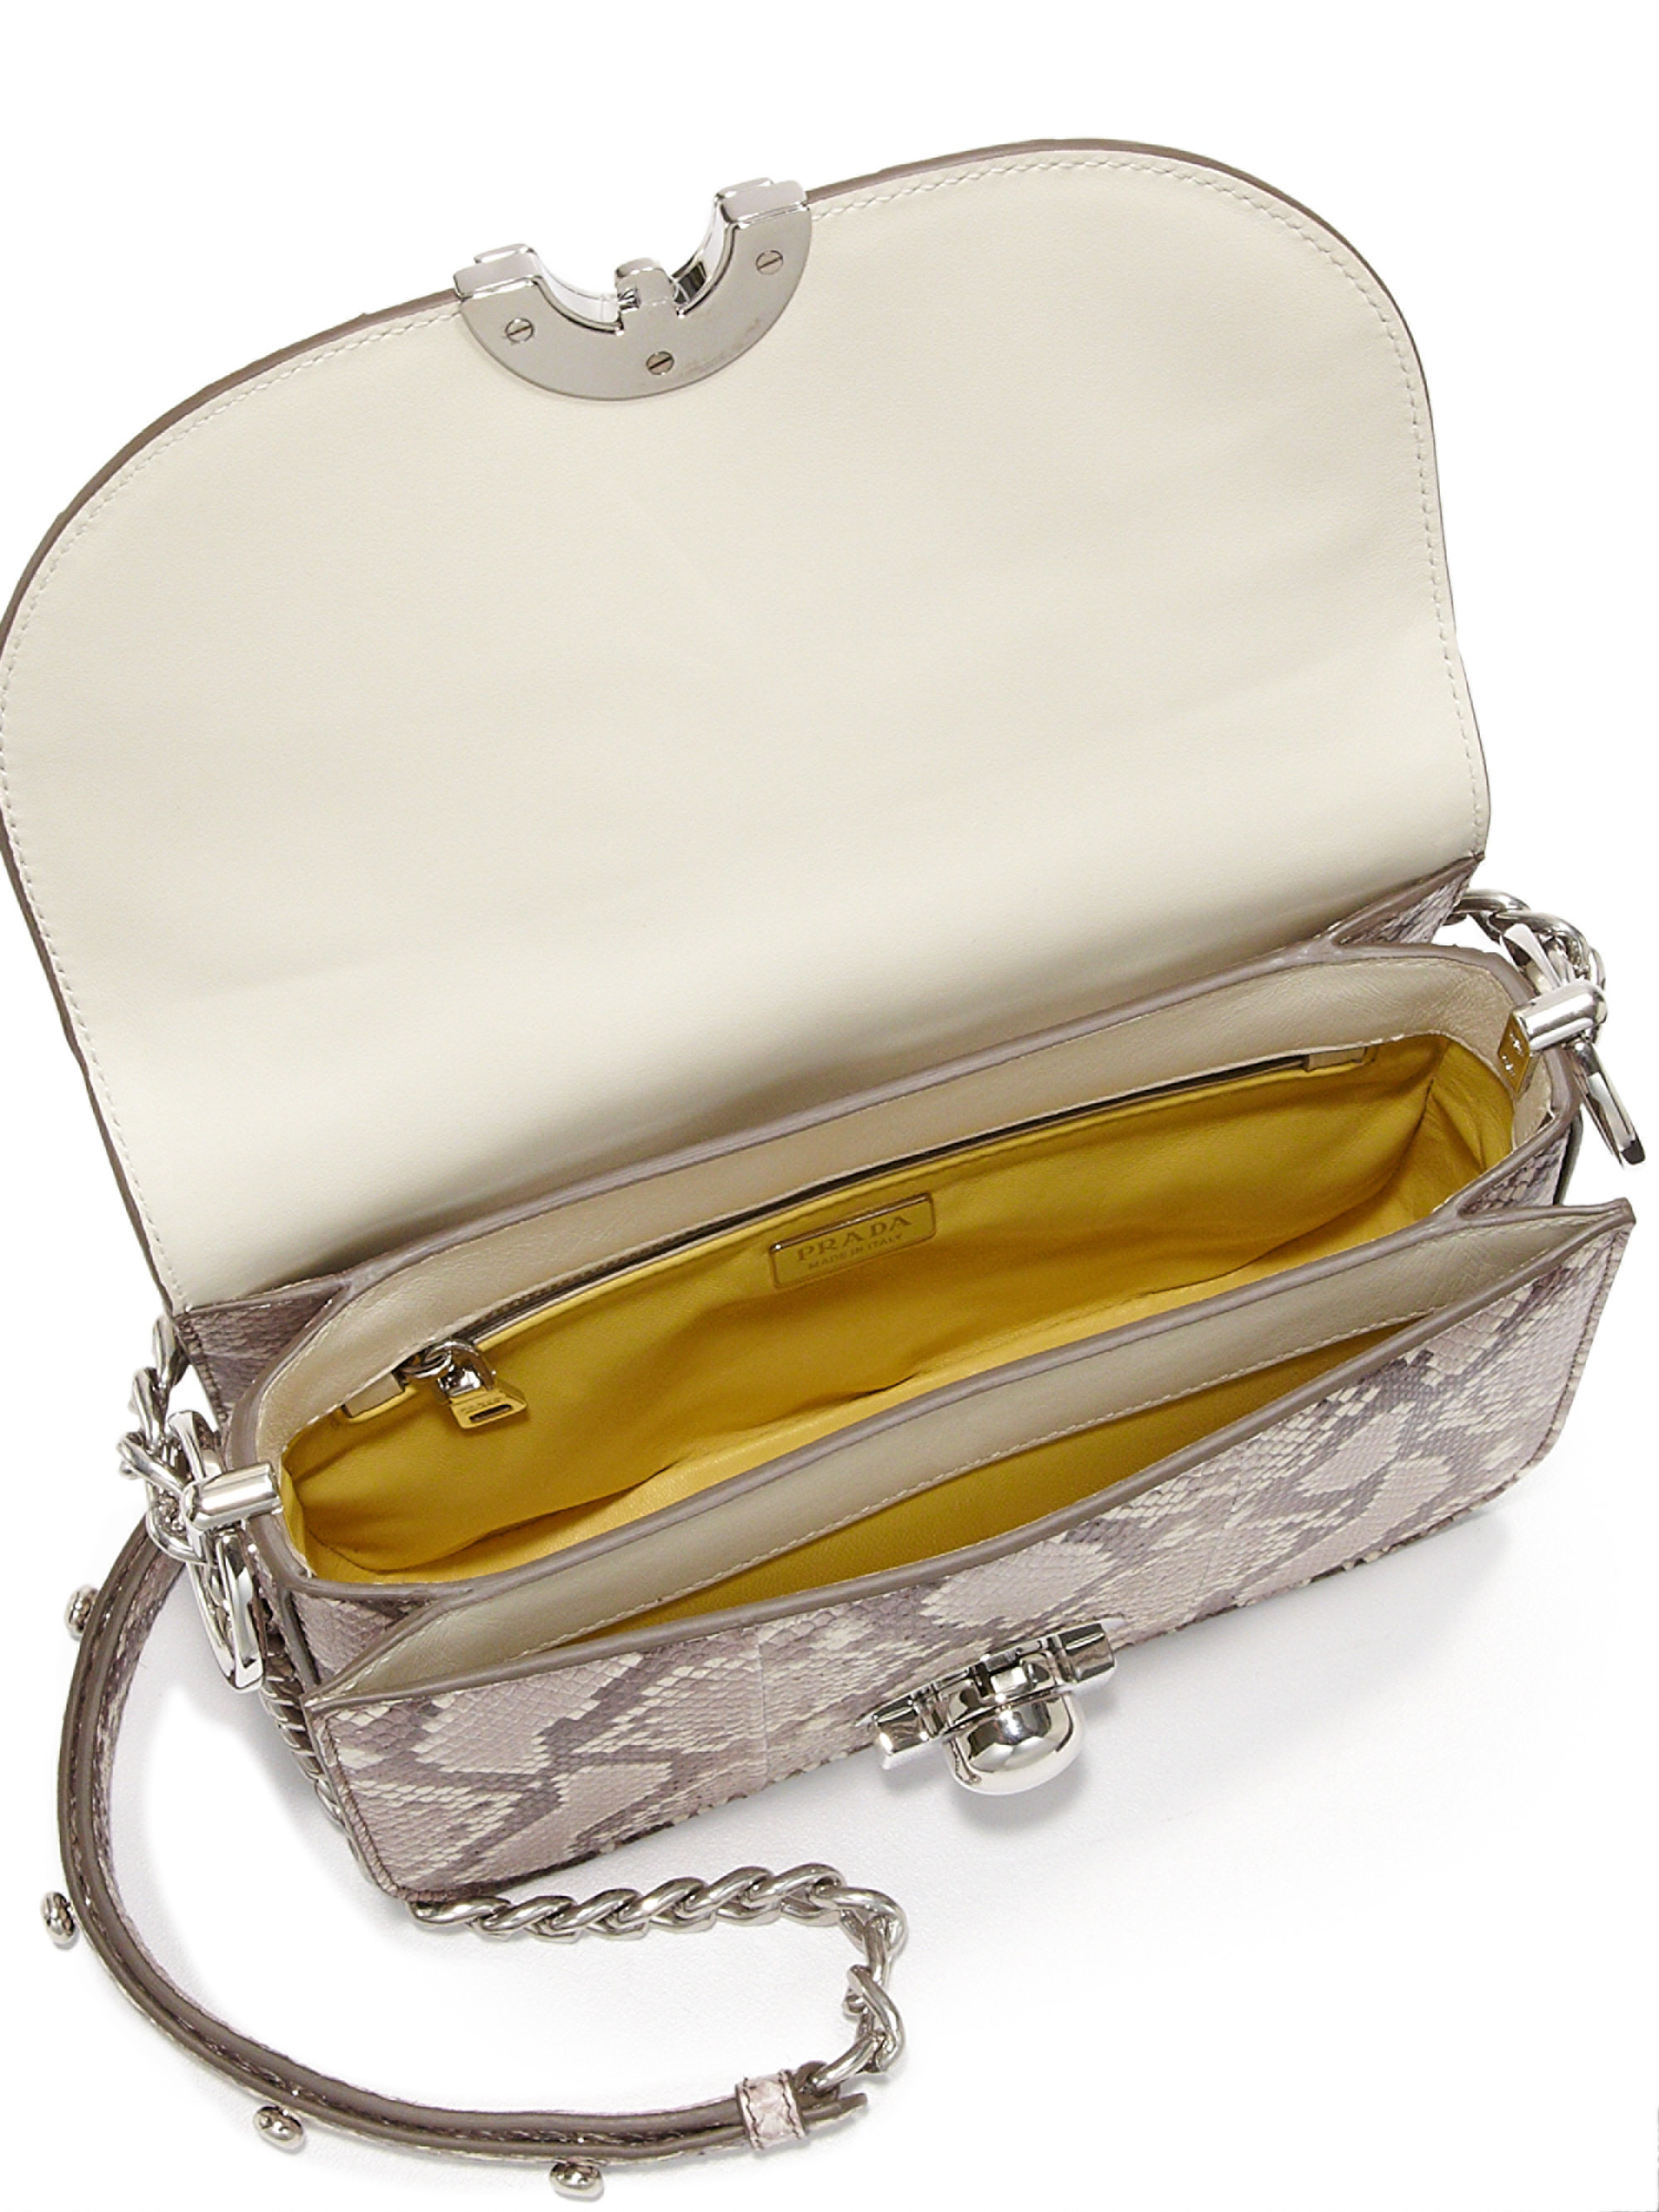 prada knockoff handbags cheap - Prada Python \u0026amp; Ayers Baiadera Arcade Bag in Beige (beige-multi) | Lyst